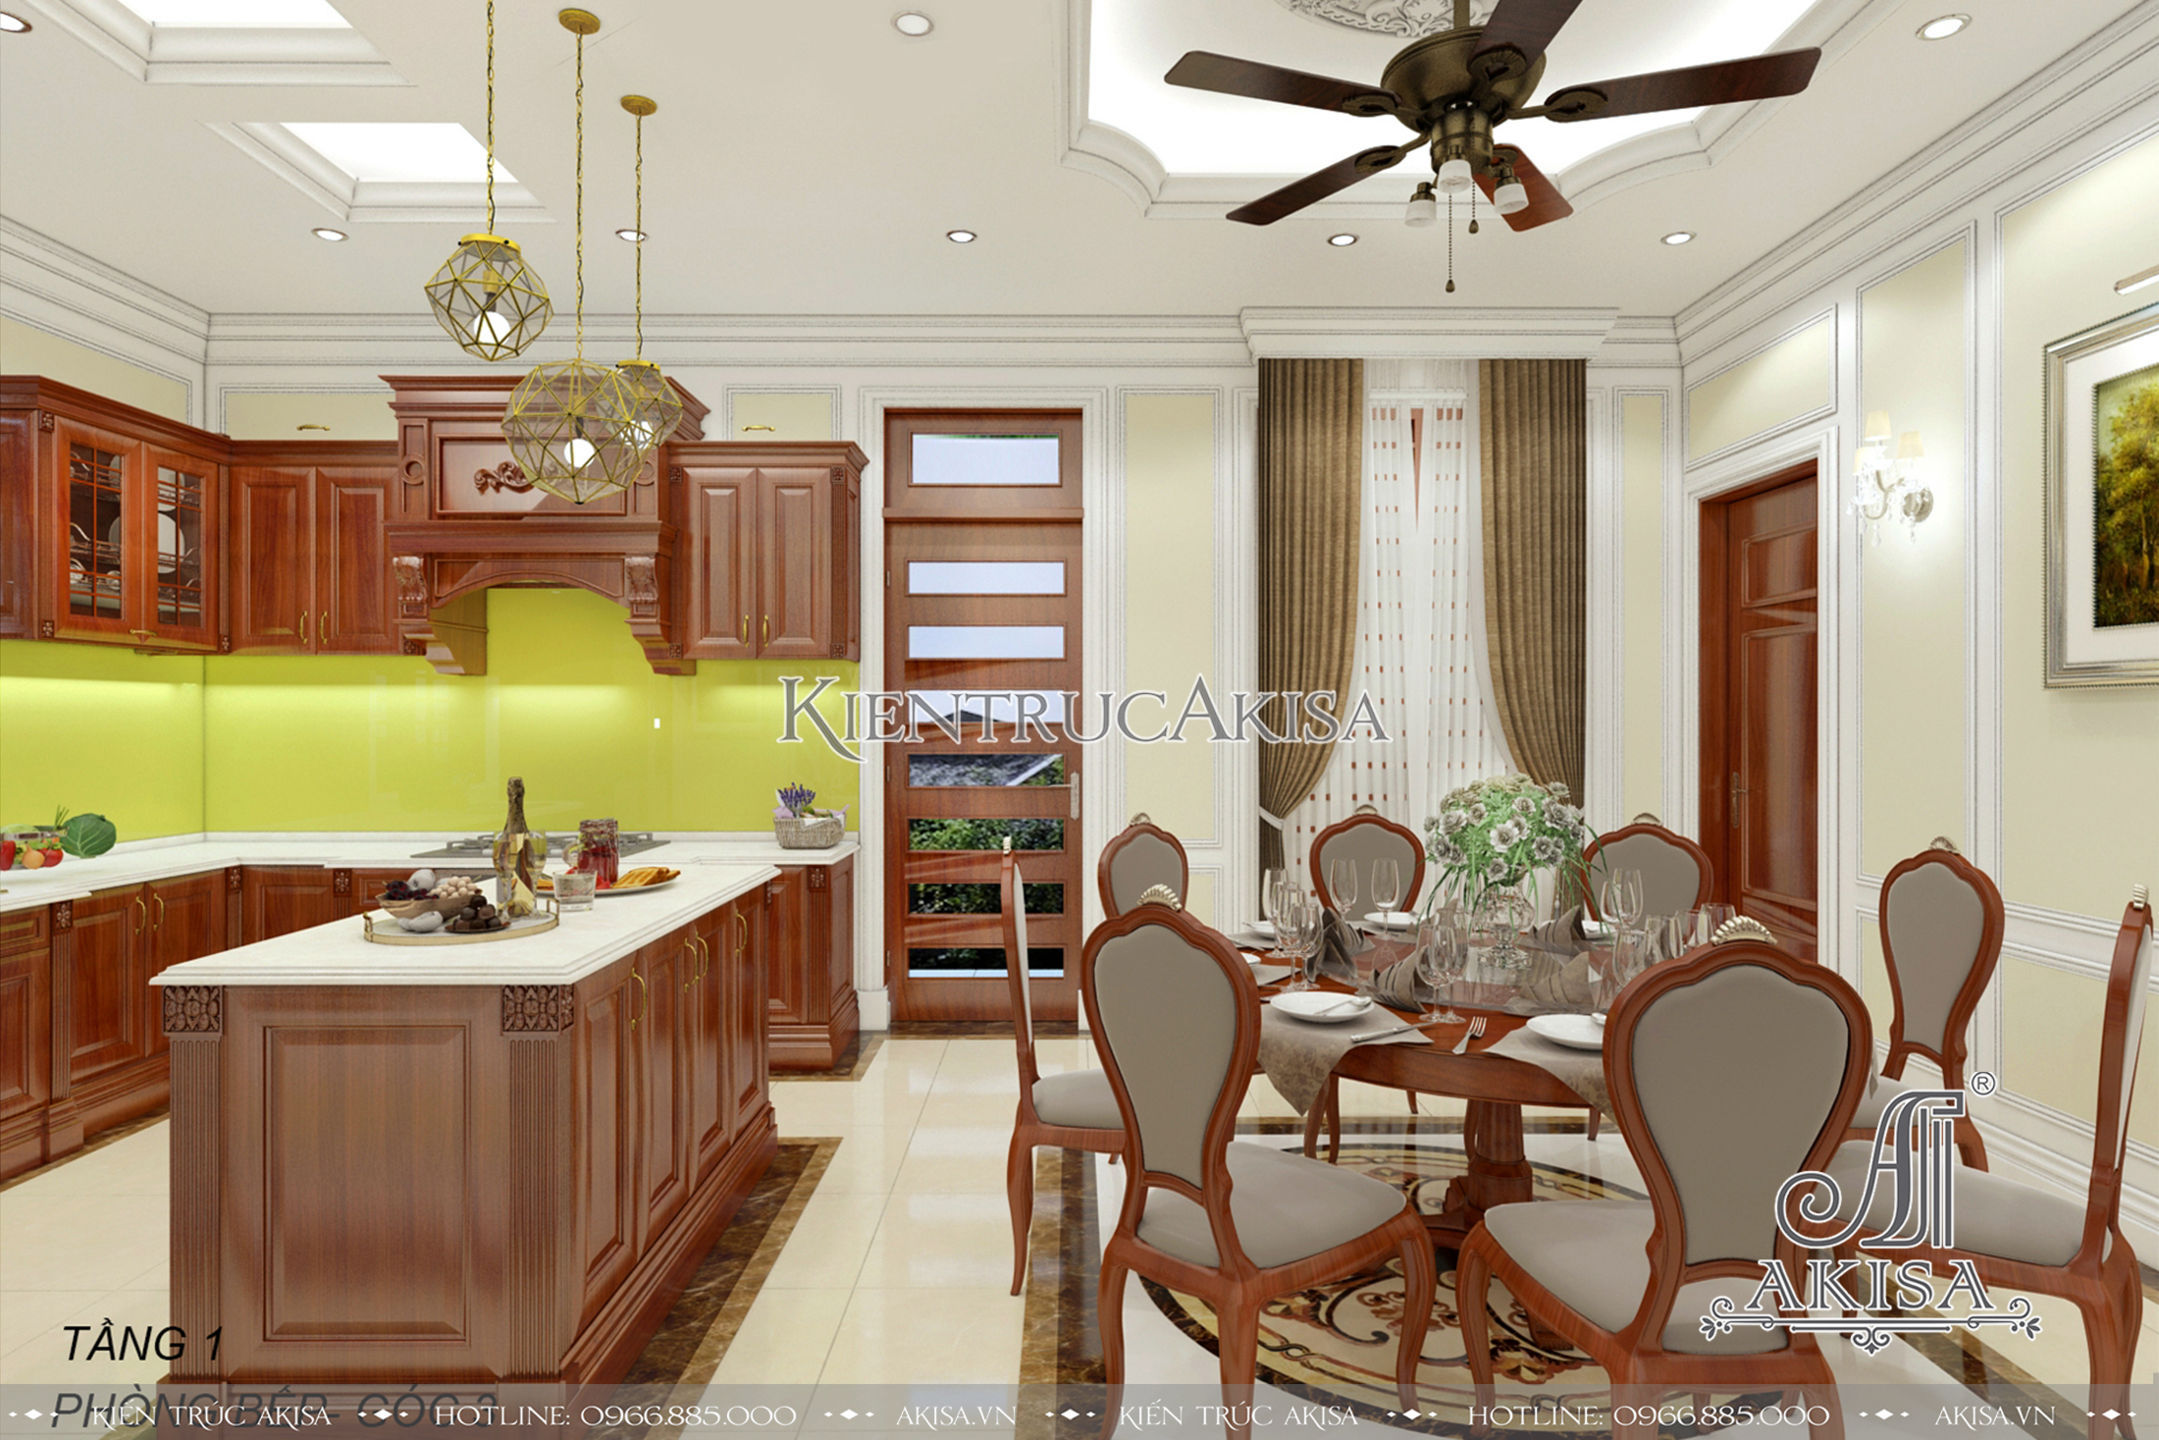 Phòng bếp thiết kế đơn giản, ấm cúng với các vật dụng nội thất bằng gỗ đồng bộ với phòng khách, là nơi sum họp gắn kết các thành viên trong gia đình.